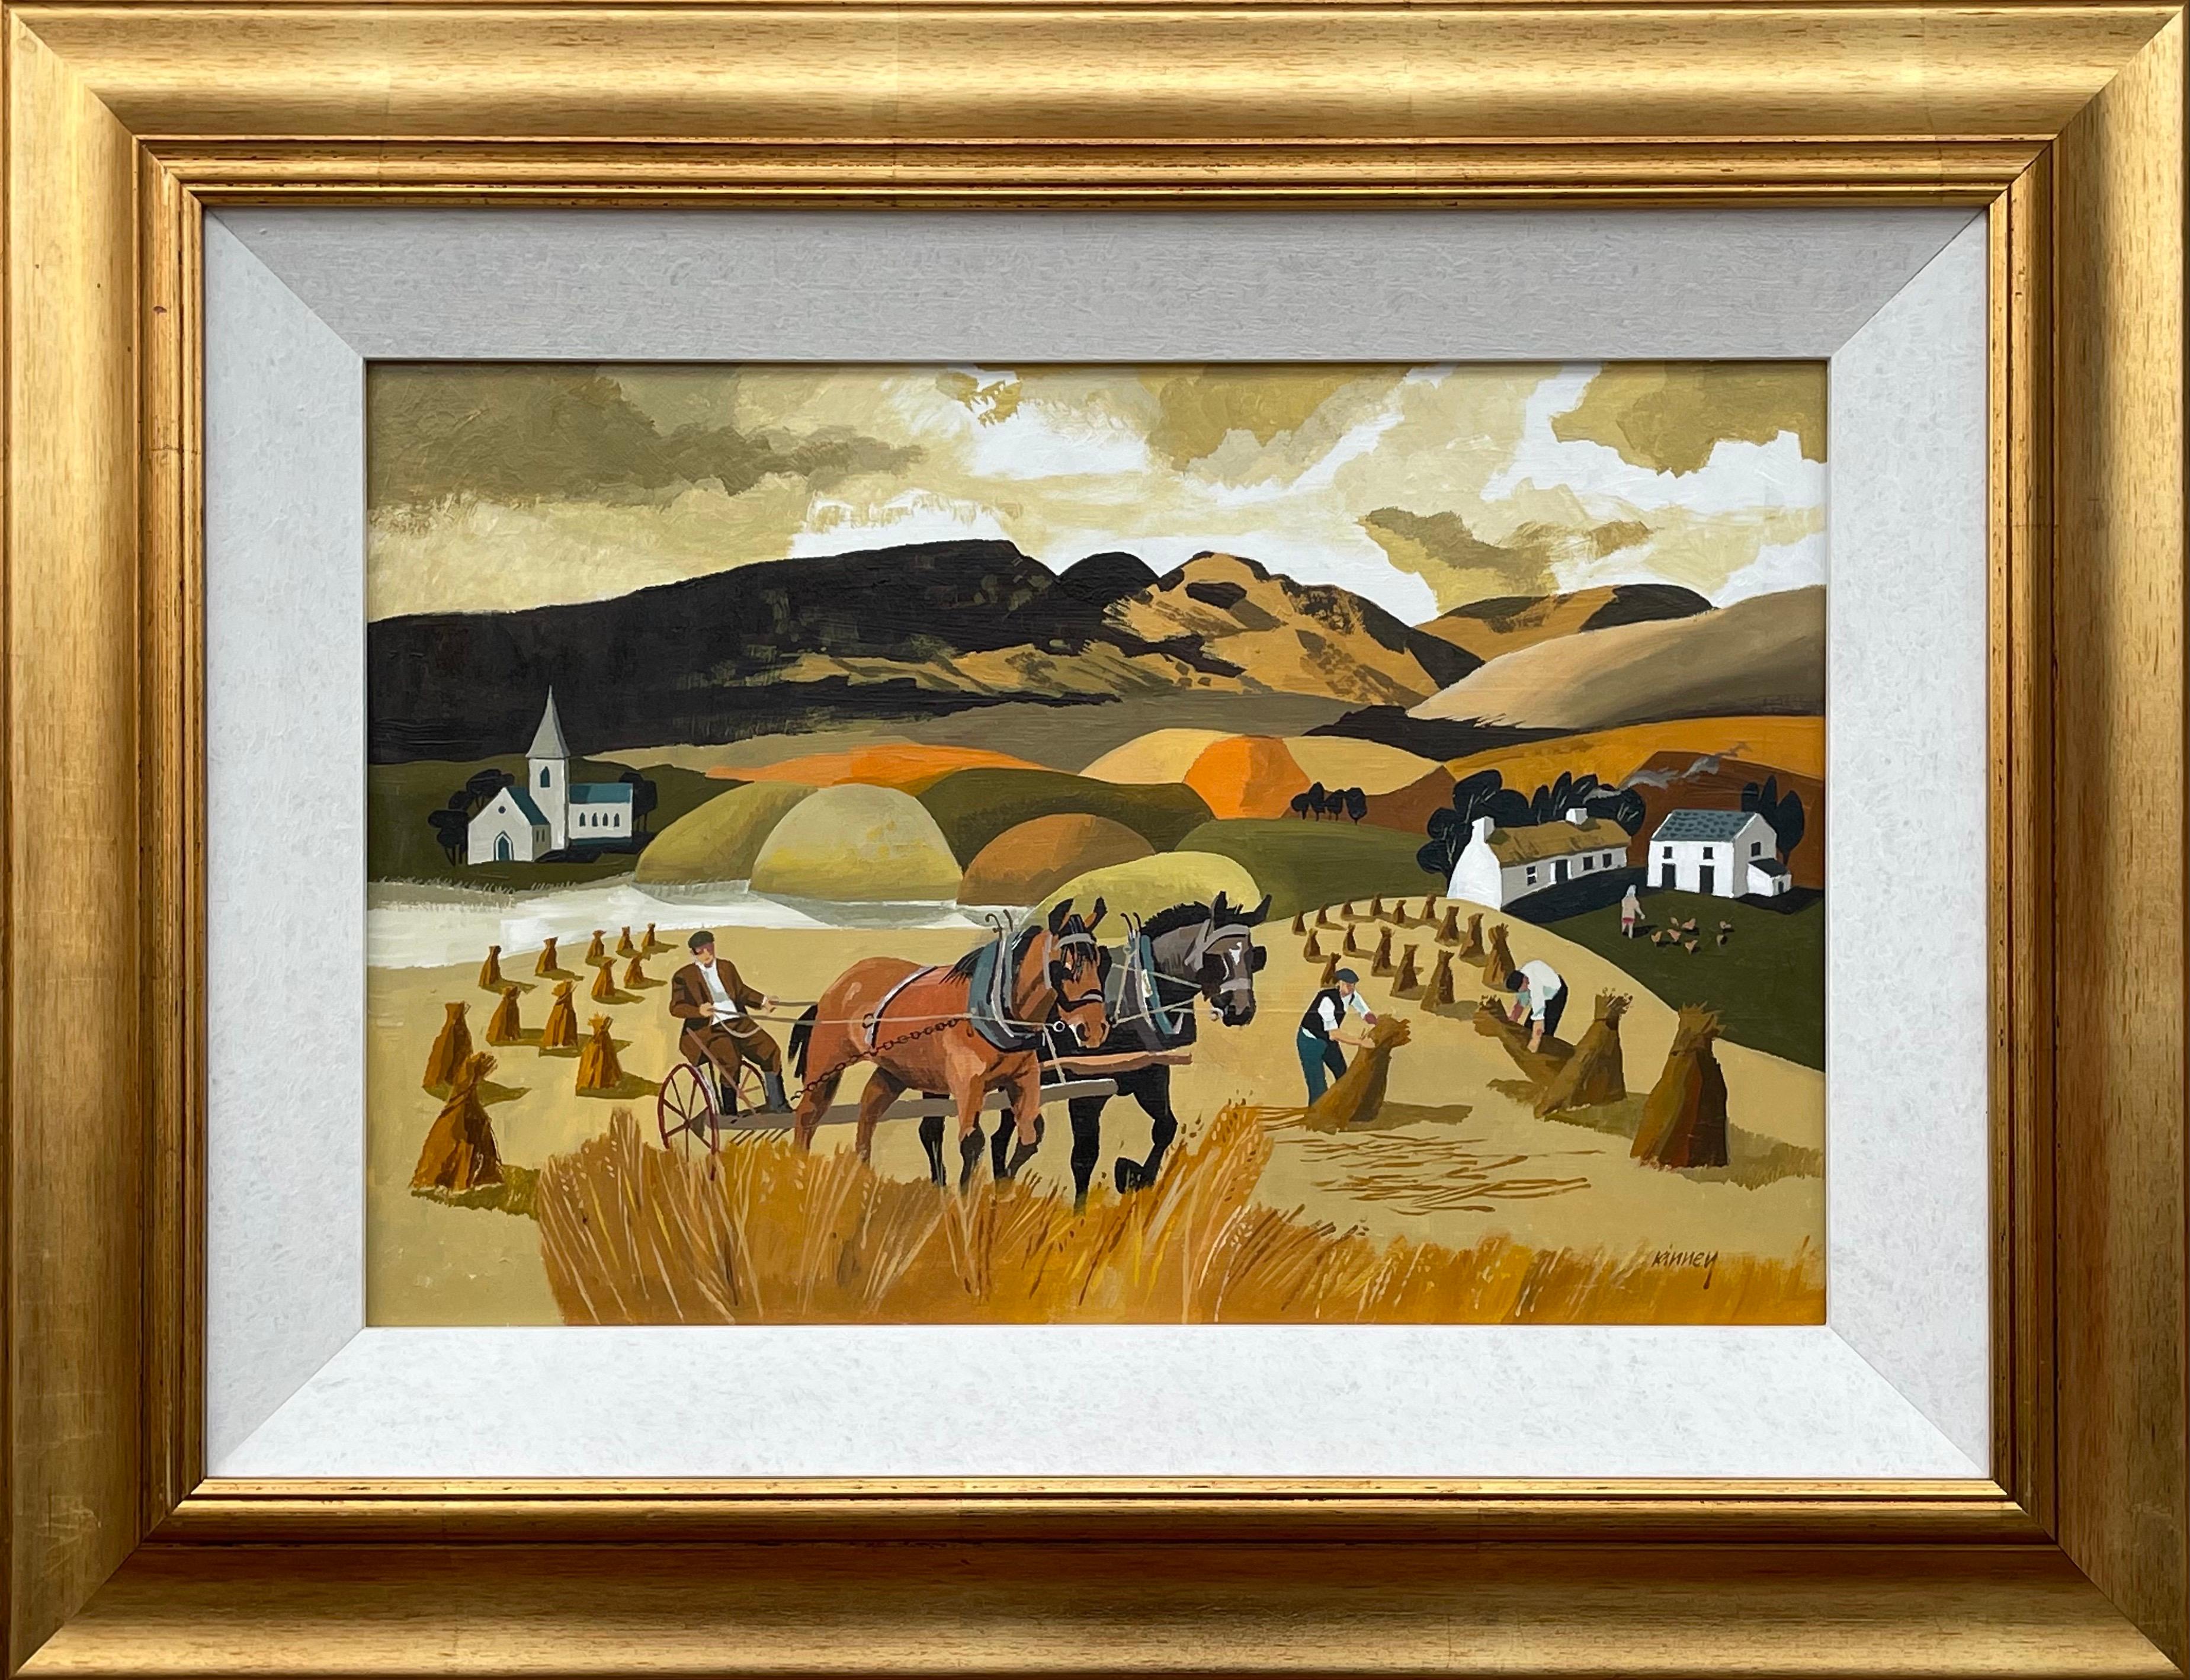 Landscape Painting Desmond Kinney - Paysage abstrait de chevaux à Cornfield aux couleurs chaudes d'un artiste irlandais moderne